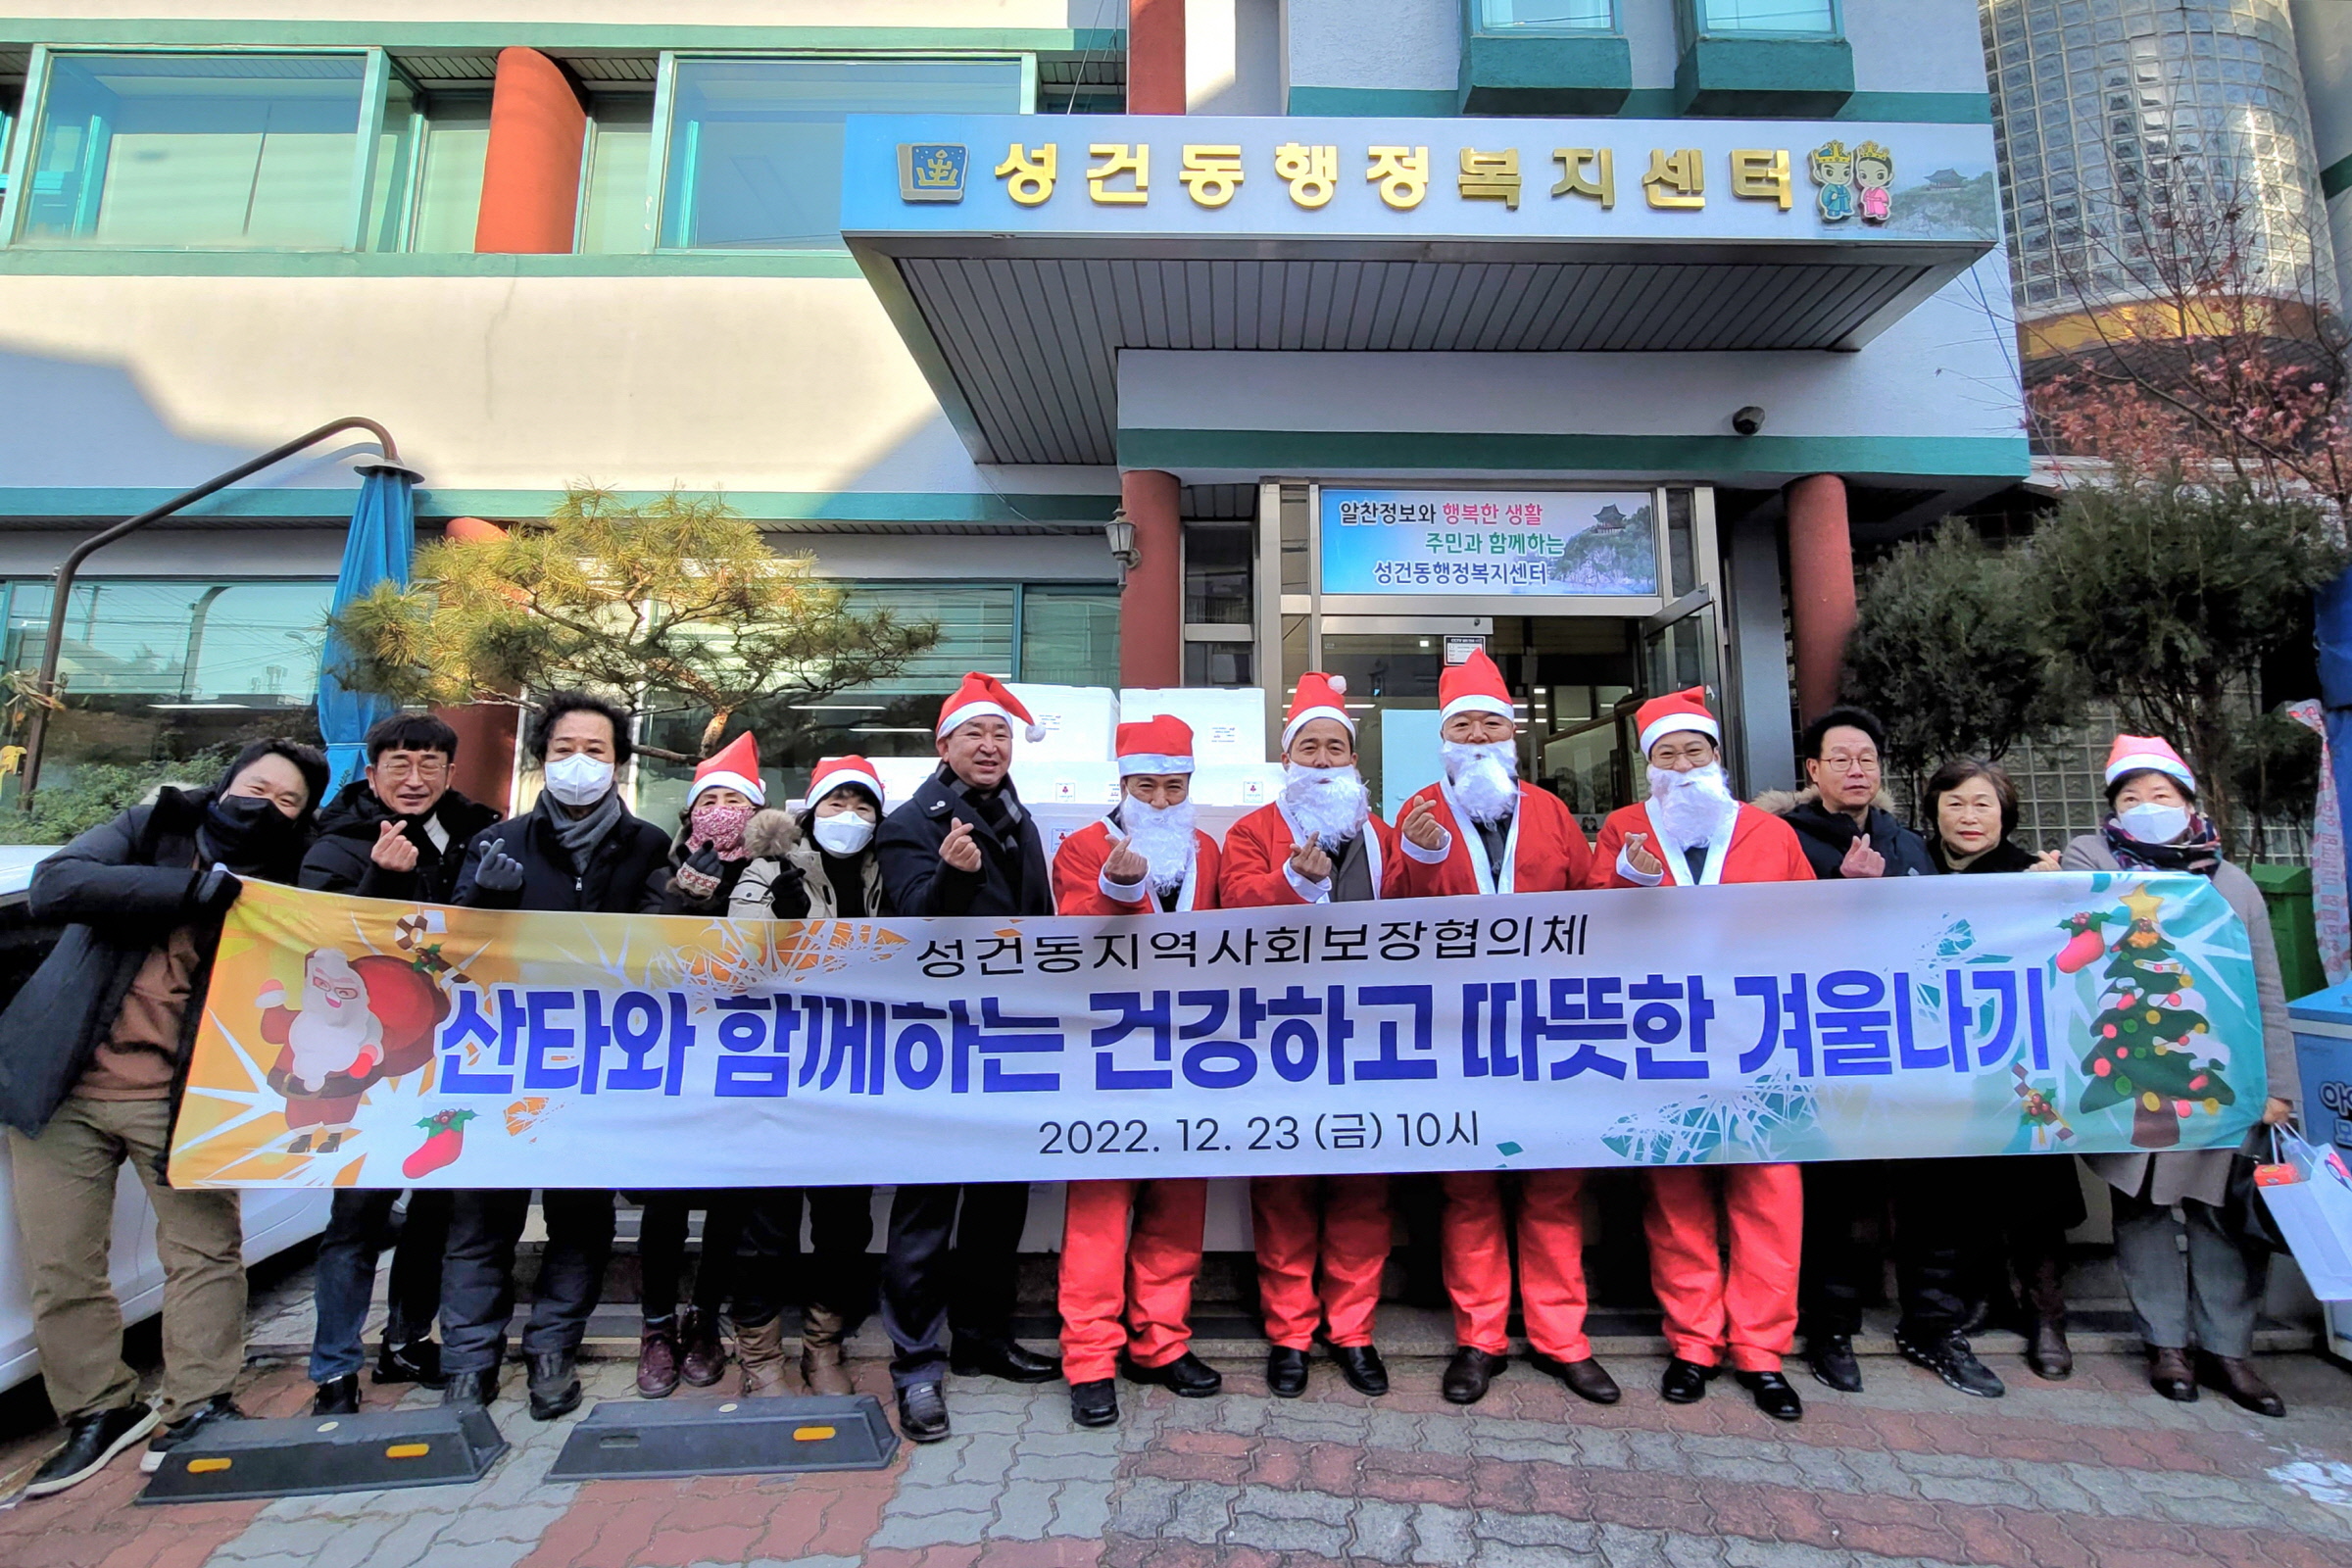 성건동지역사회보장협의체, 산타와 함께하는 따뜻하고 건강한 겨울나기 행사 열어